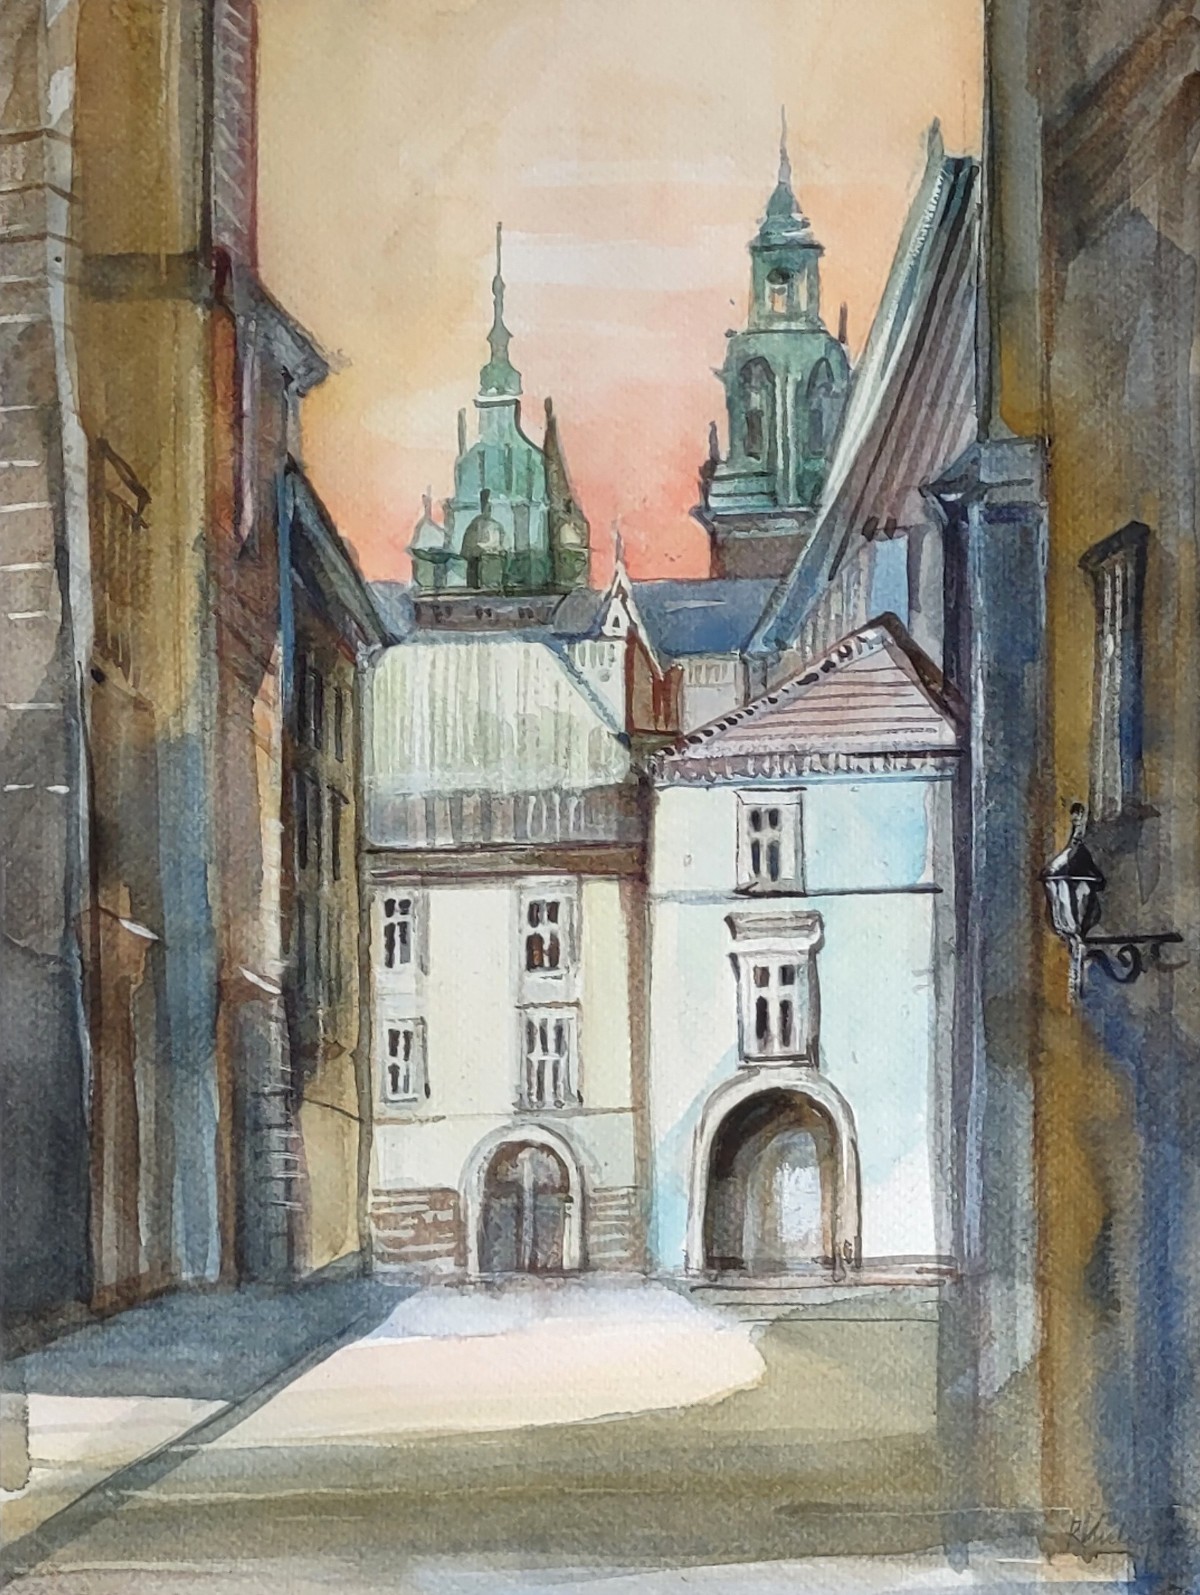 Kraków,Ulica z widokiem